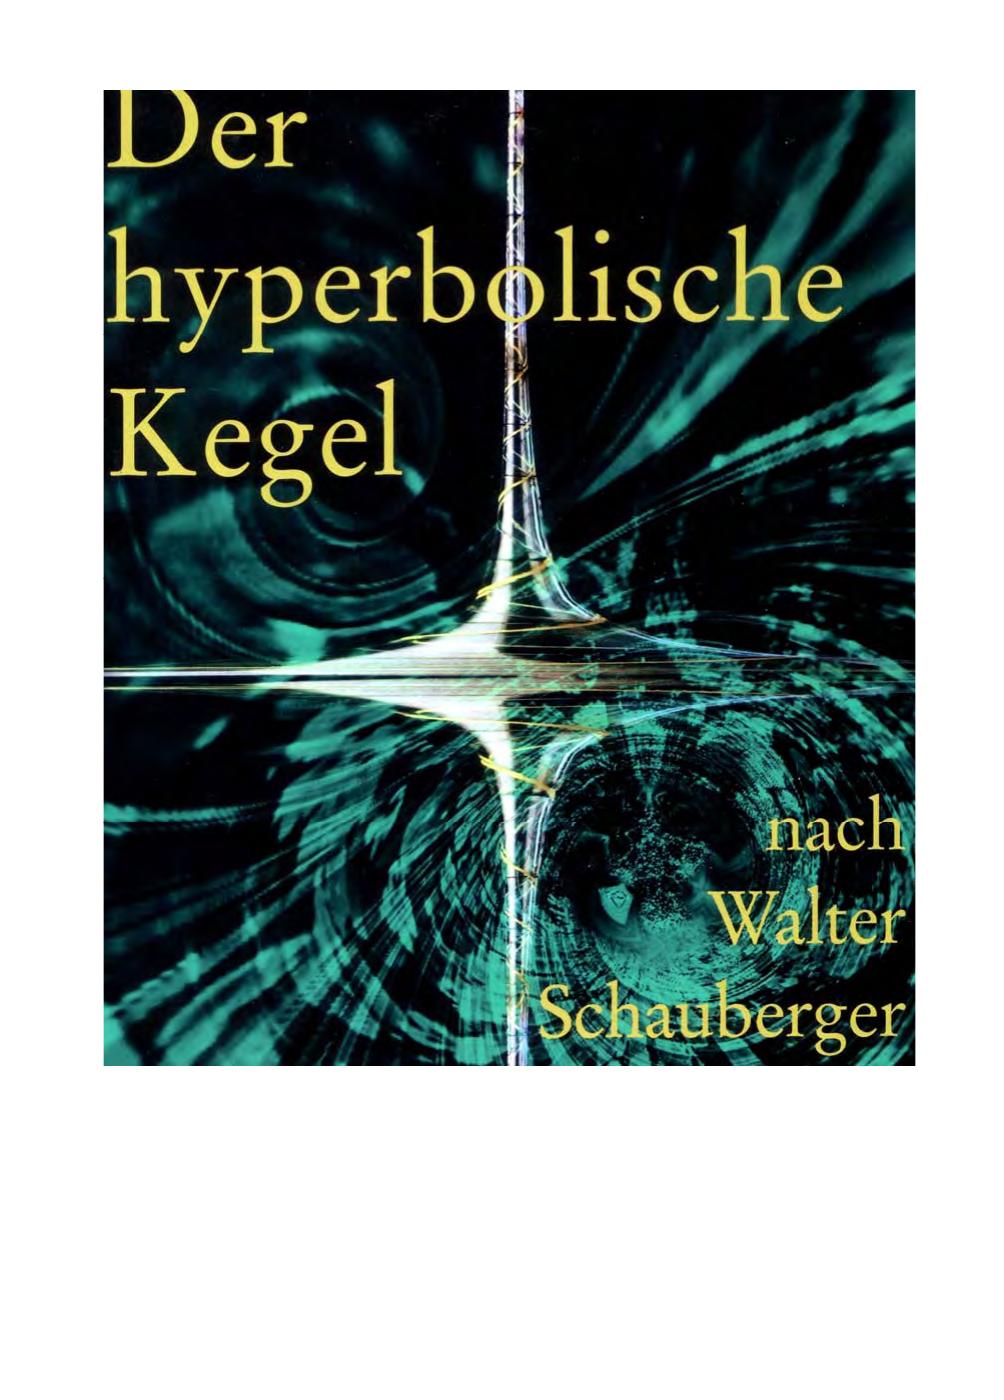 Der hyperbolische Kegel nach Walter Schauberger: eine geometrische Auseinandersetzung mit Eiformen und hyperbolischen Spiralen sowie deren harmonikalen Grundlagen